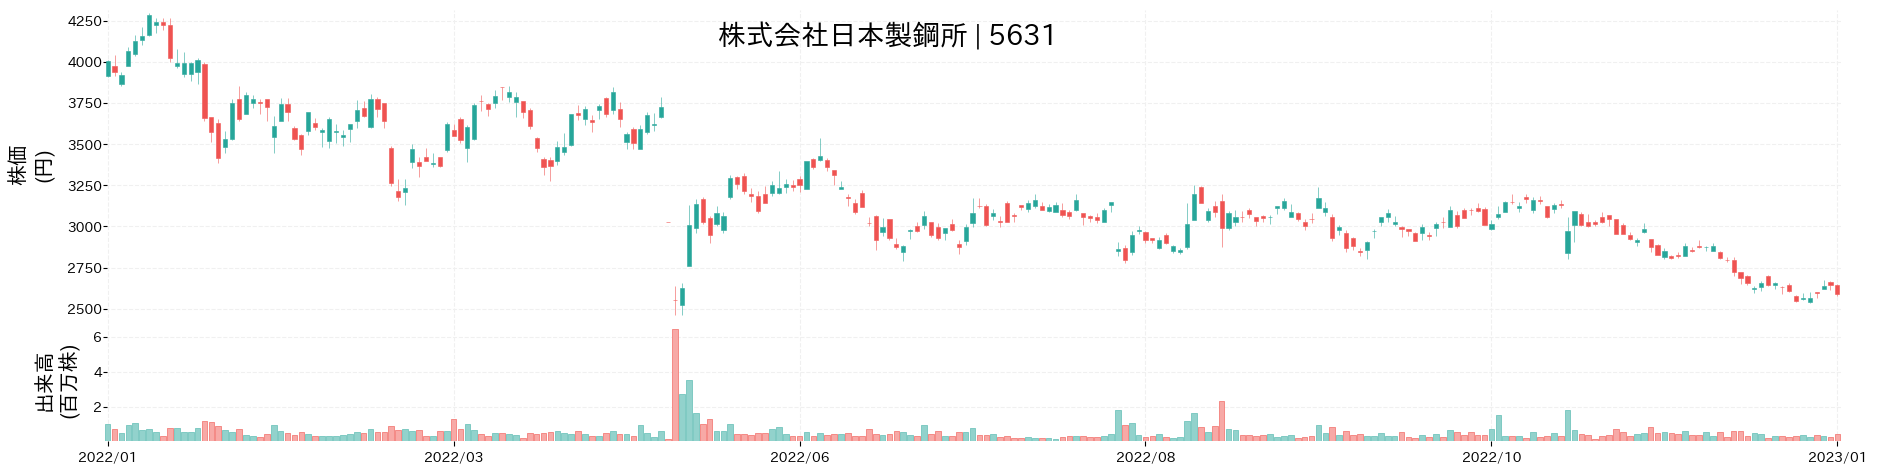 日本製鋼所の株価推移(2022)